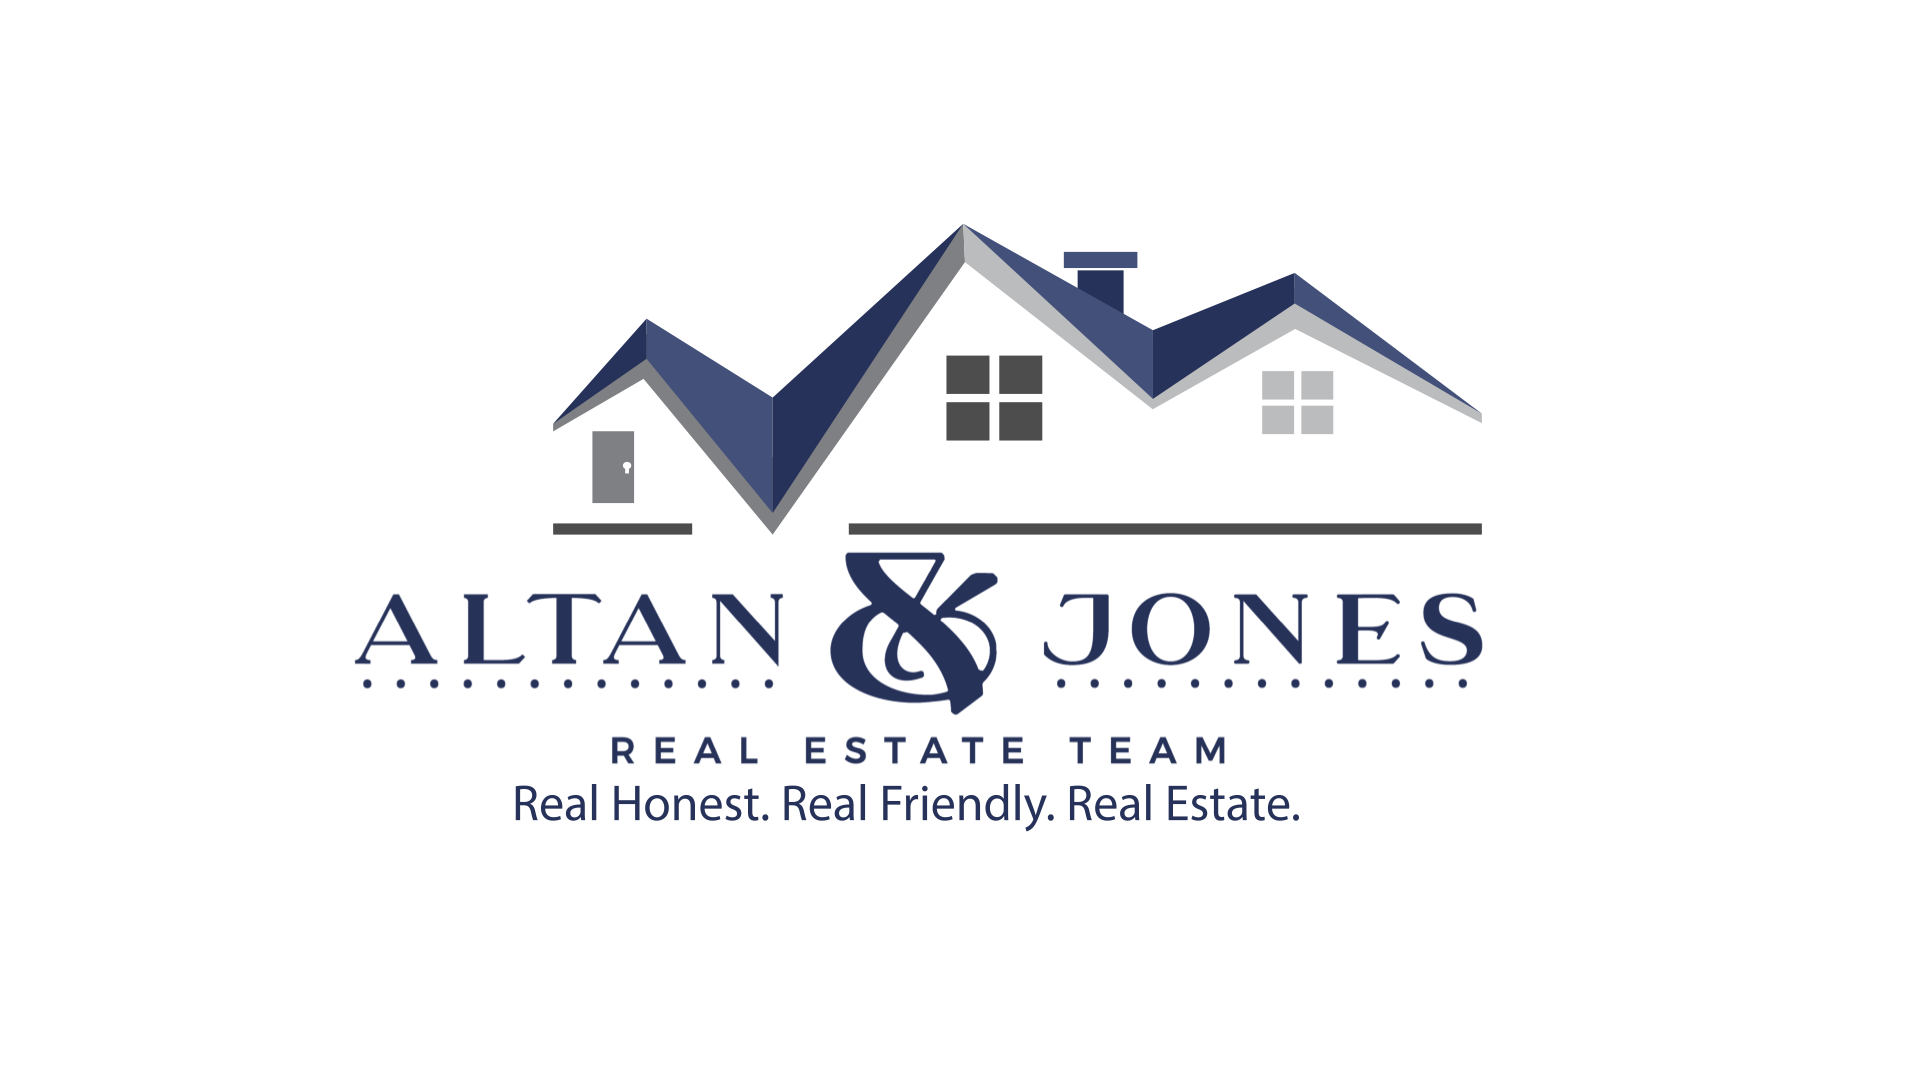 Altan & Jones Real Estate Team